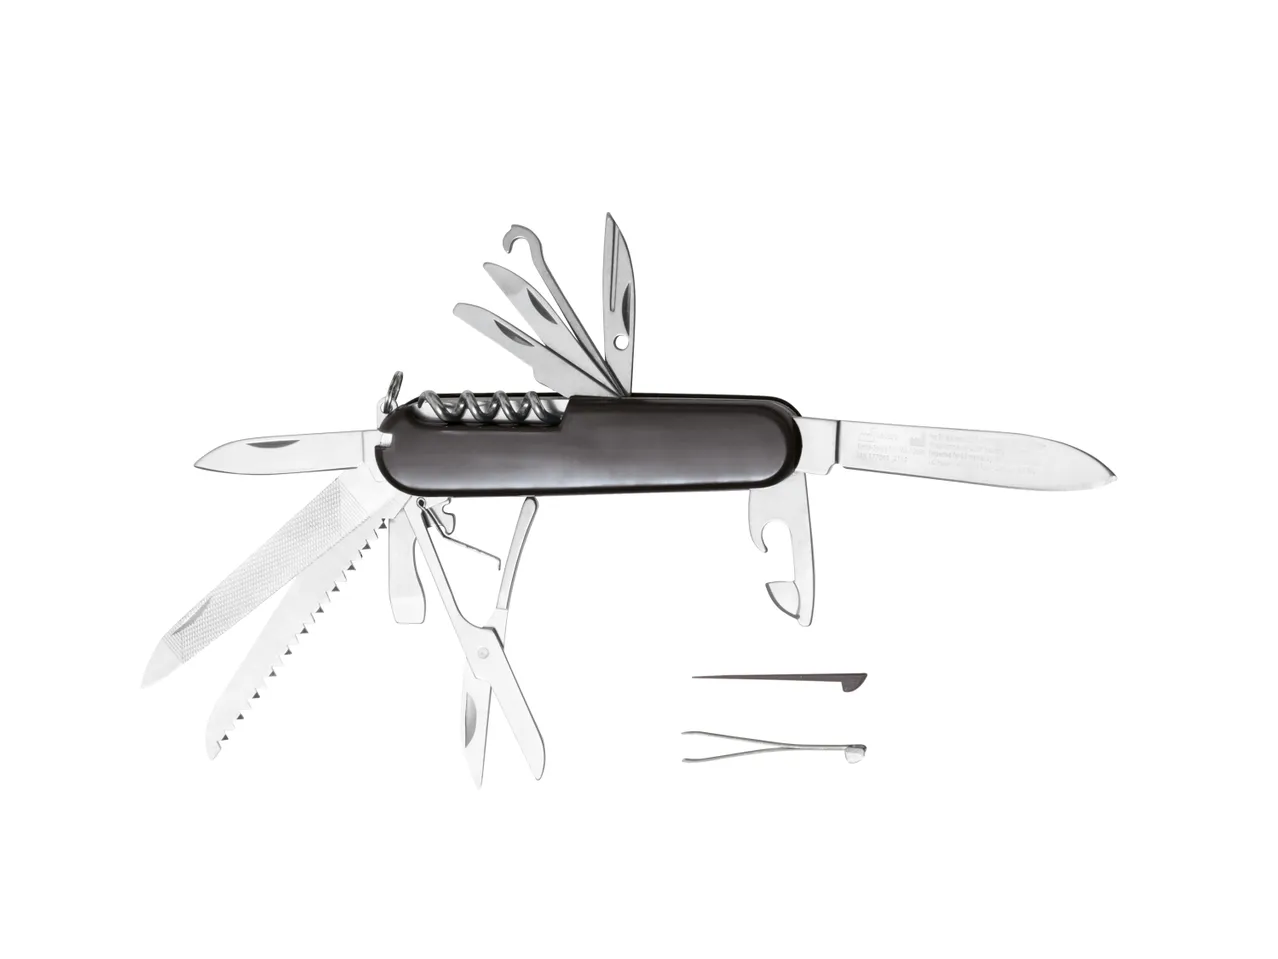 Coltello o coltellino tascabile , prezzo 5.99 EUR 
Coltello o coltellino tascabile ...